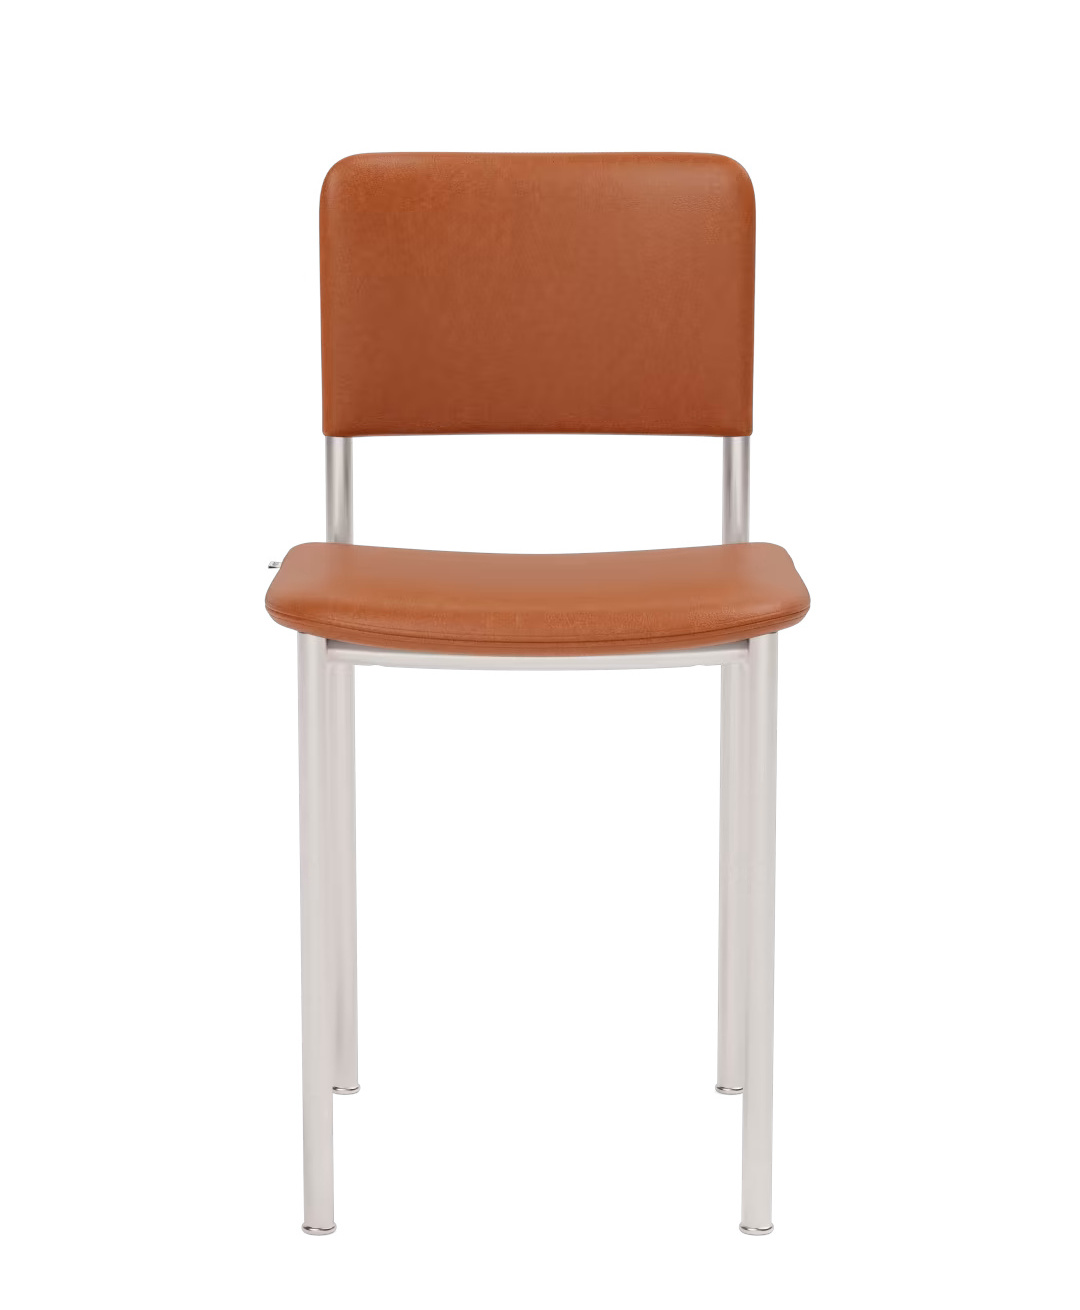 Plan Chair voll gepolstert, brushed steel / leder max 95 cognac